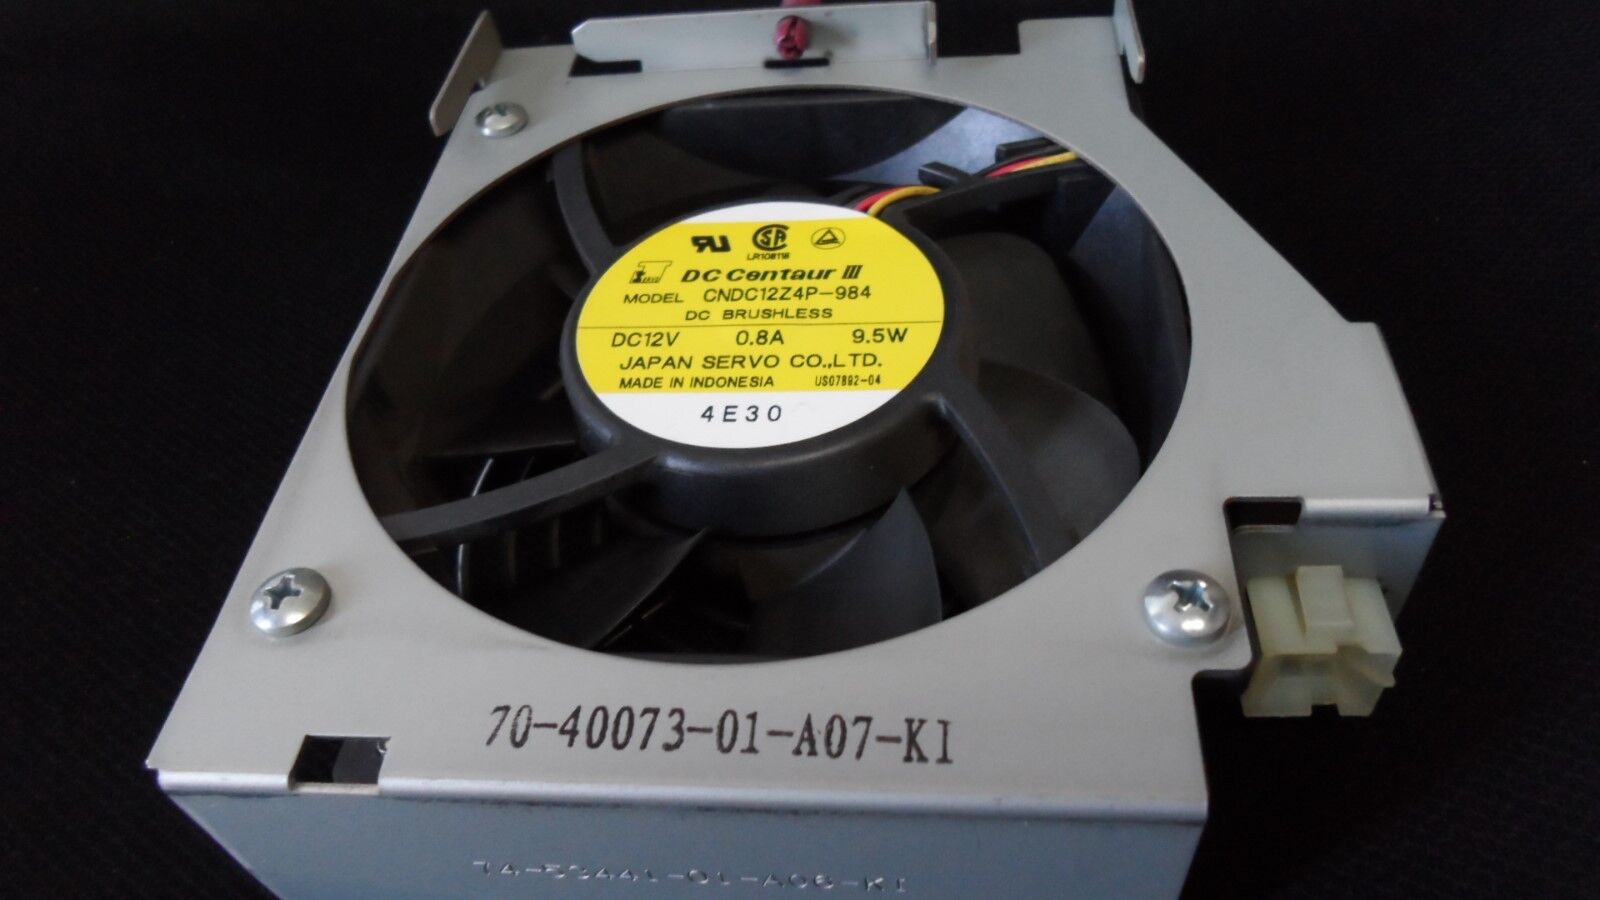 HP Compaq DEC ES45 M2 70-70073-01 Fan Assembly A07-KI